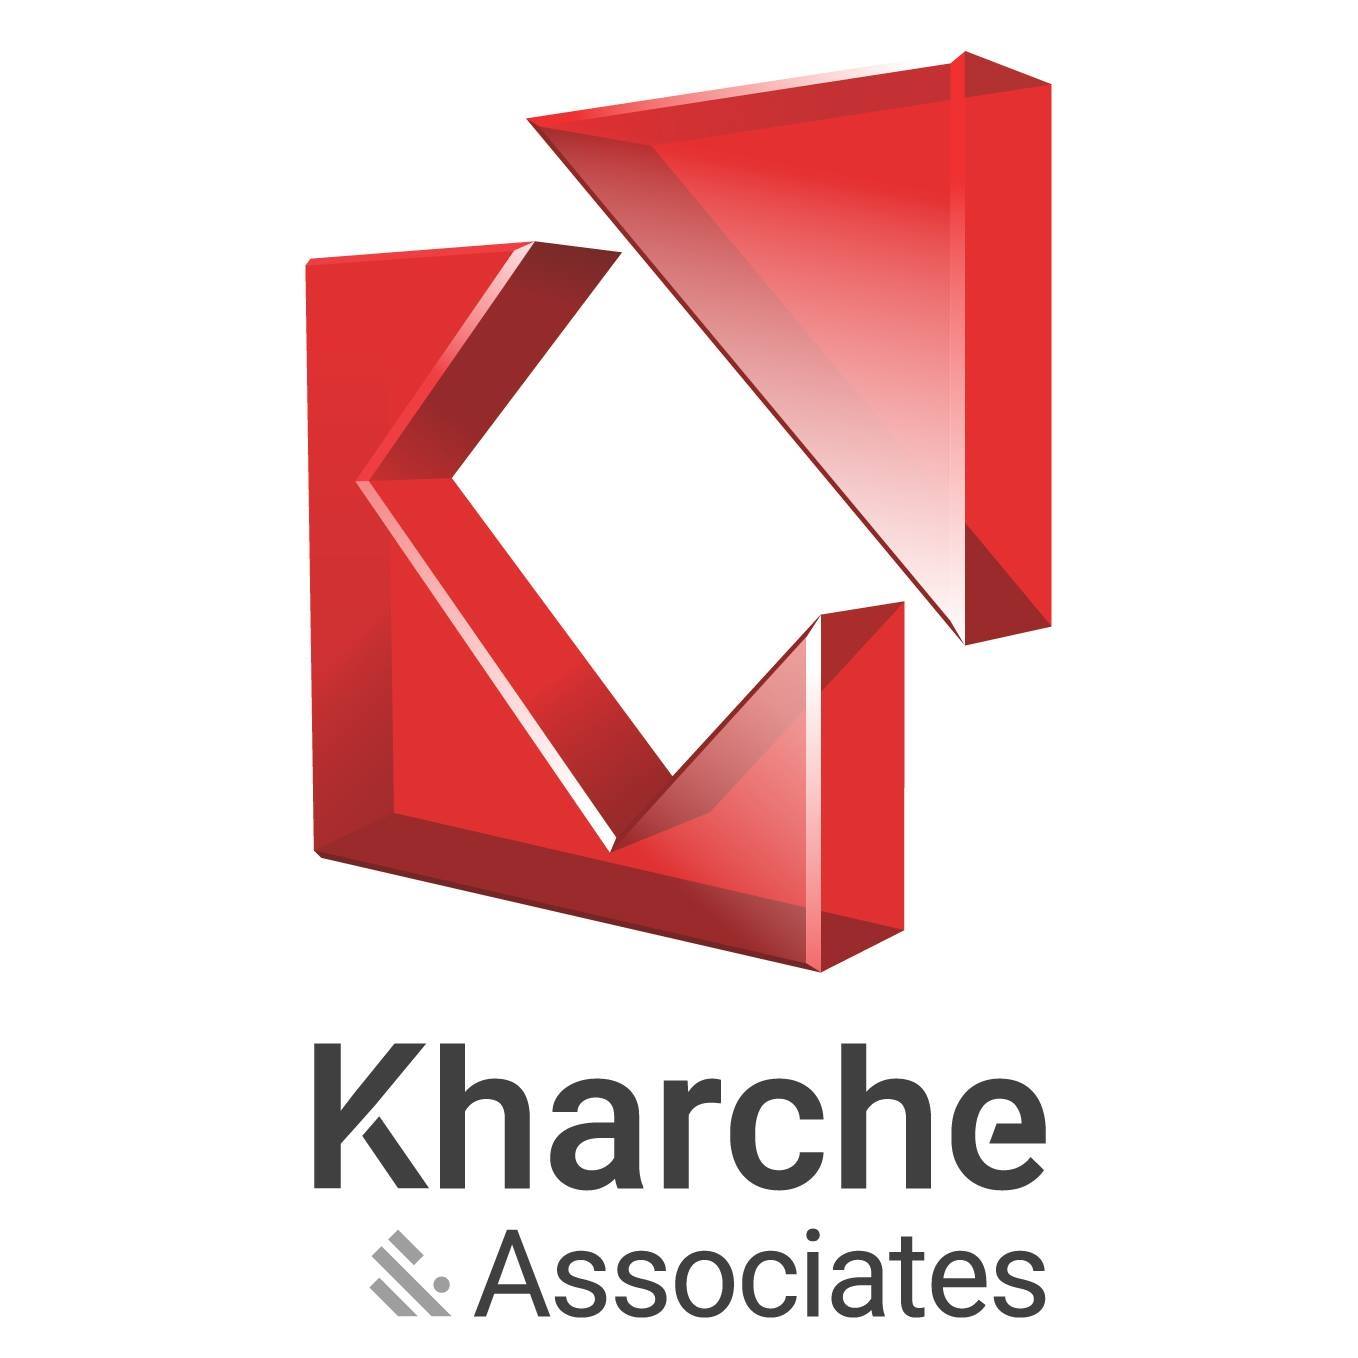 Kharche & Associates|Legal Services|Professional Services